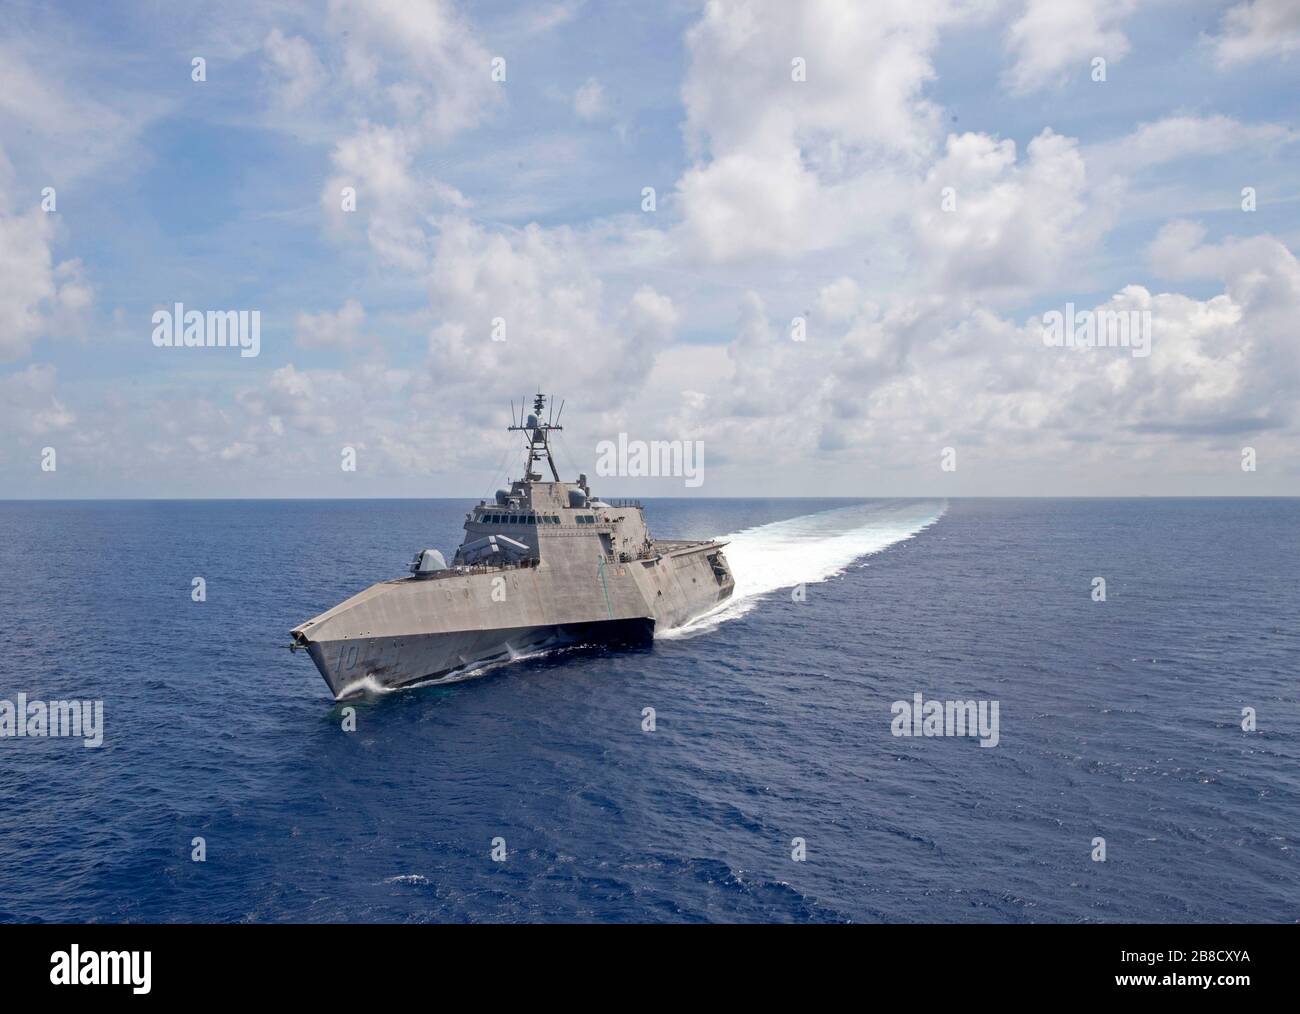 Das US Navy Independence-variant Littoral Combat Ship USS Gabrielle Giffords während der Routinepatrouille als Teil von Destroyer Squadron Seven, der 7. Flotte vom 20. März 2020 im Südchinesischen Meer. Stockfoto